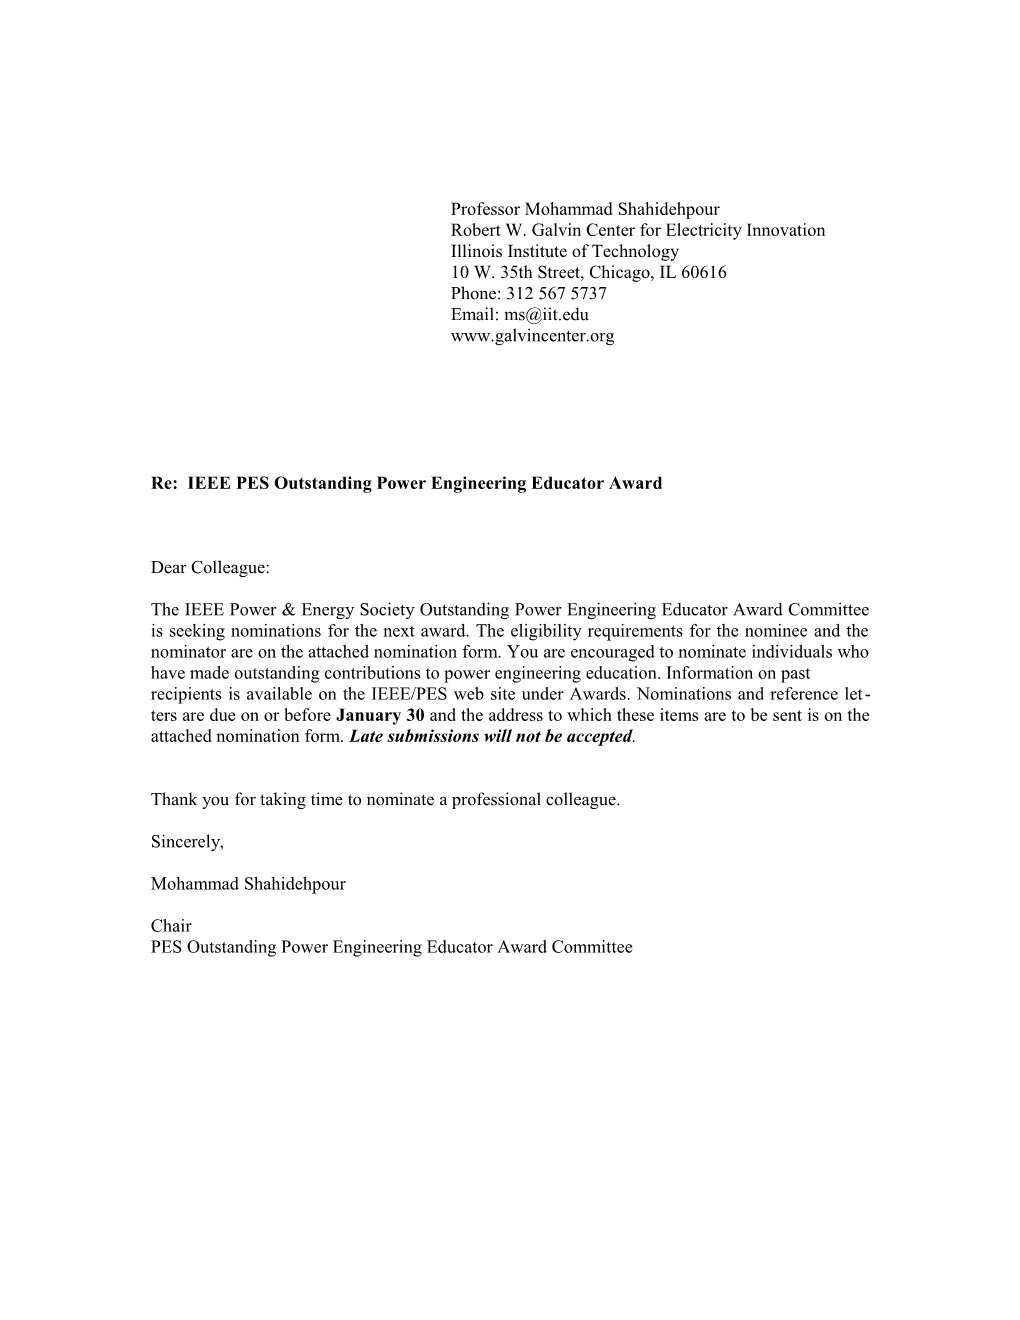 Re: IEEE PES Outstanding Power Engineering Educator Award